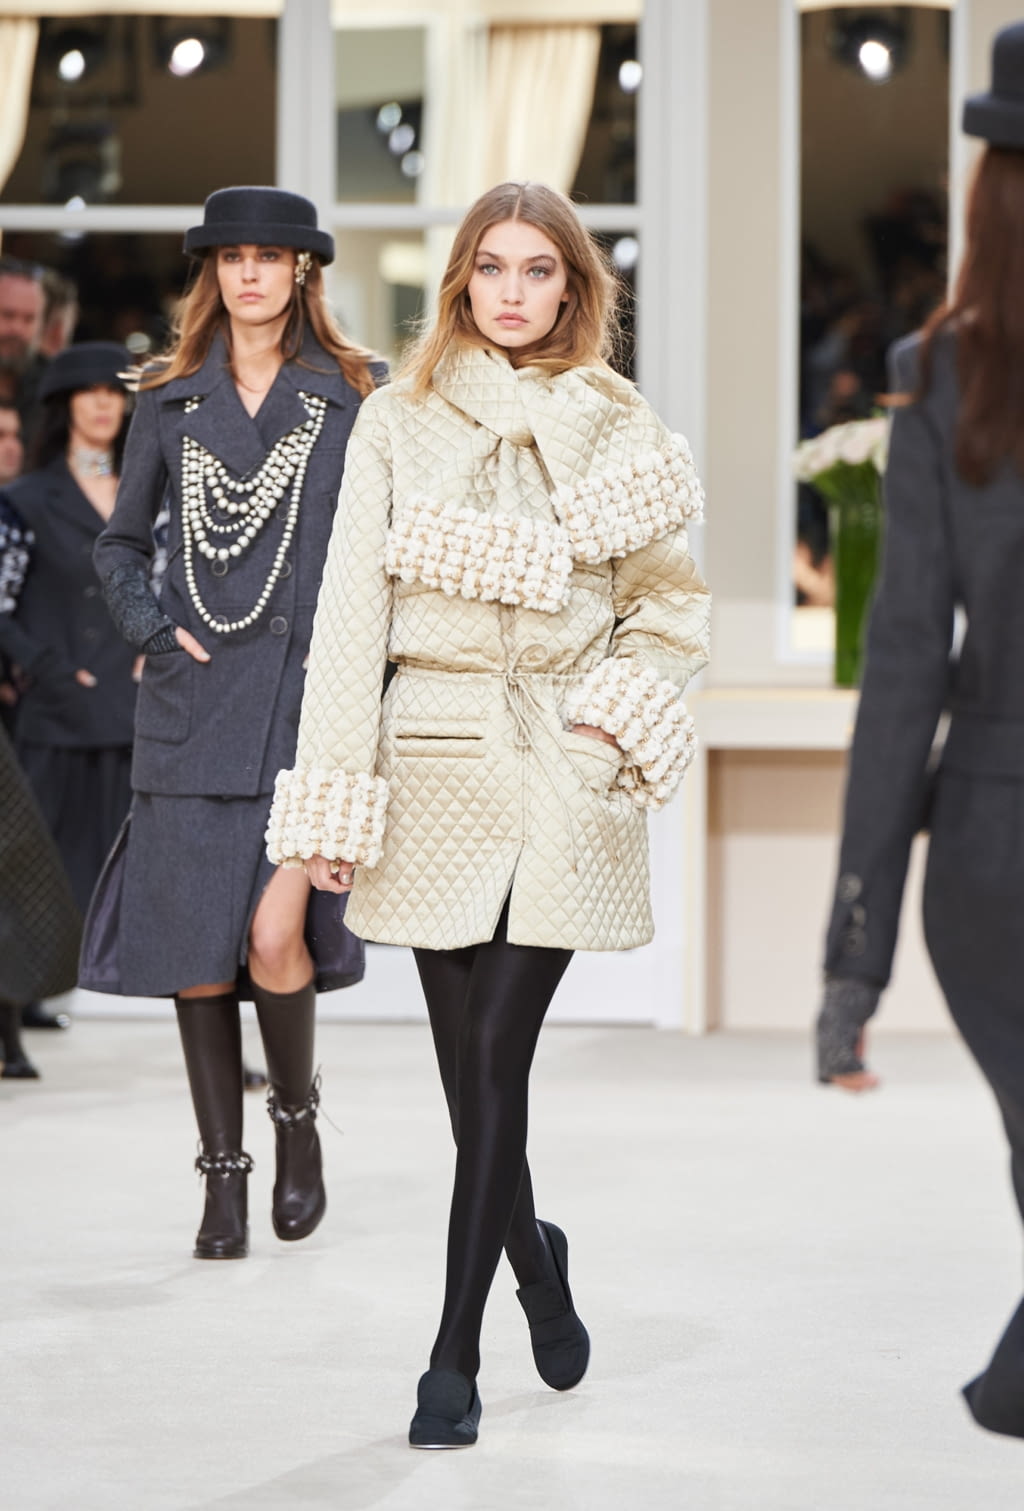 Chanel F/W 16 womenswear #39 - Tagwalk: The Fashion Search Engine